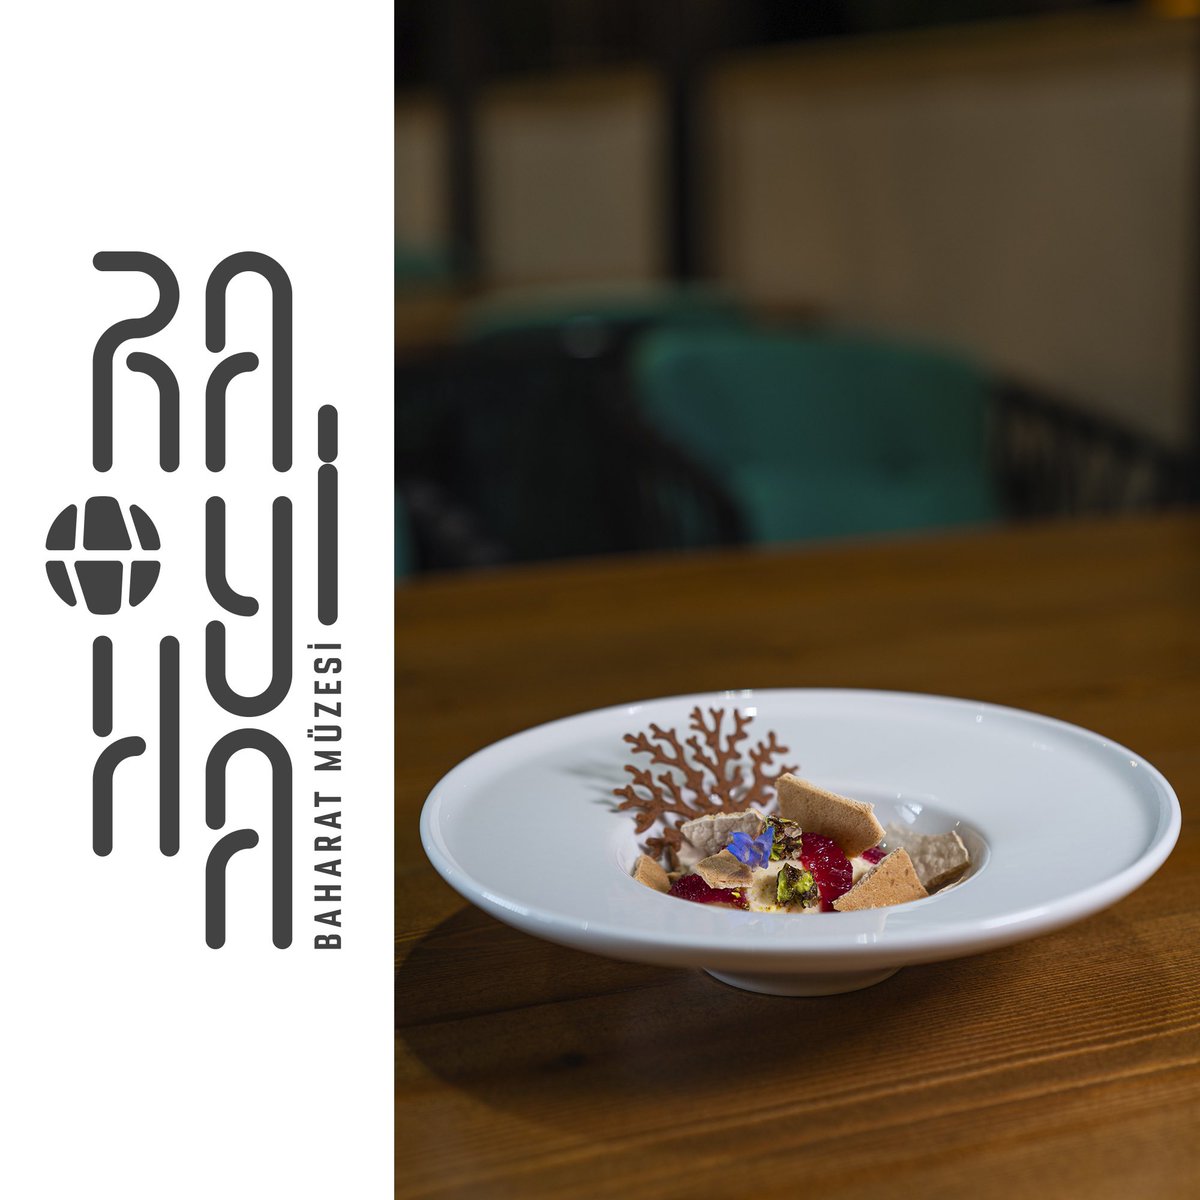 Eşsiz deneyimler Rayiha Restoran’da! #rayihabaharatmüzesi #rayiharestoran #finedining #gaziantep #turkey